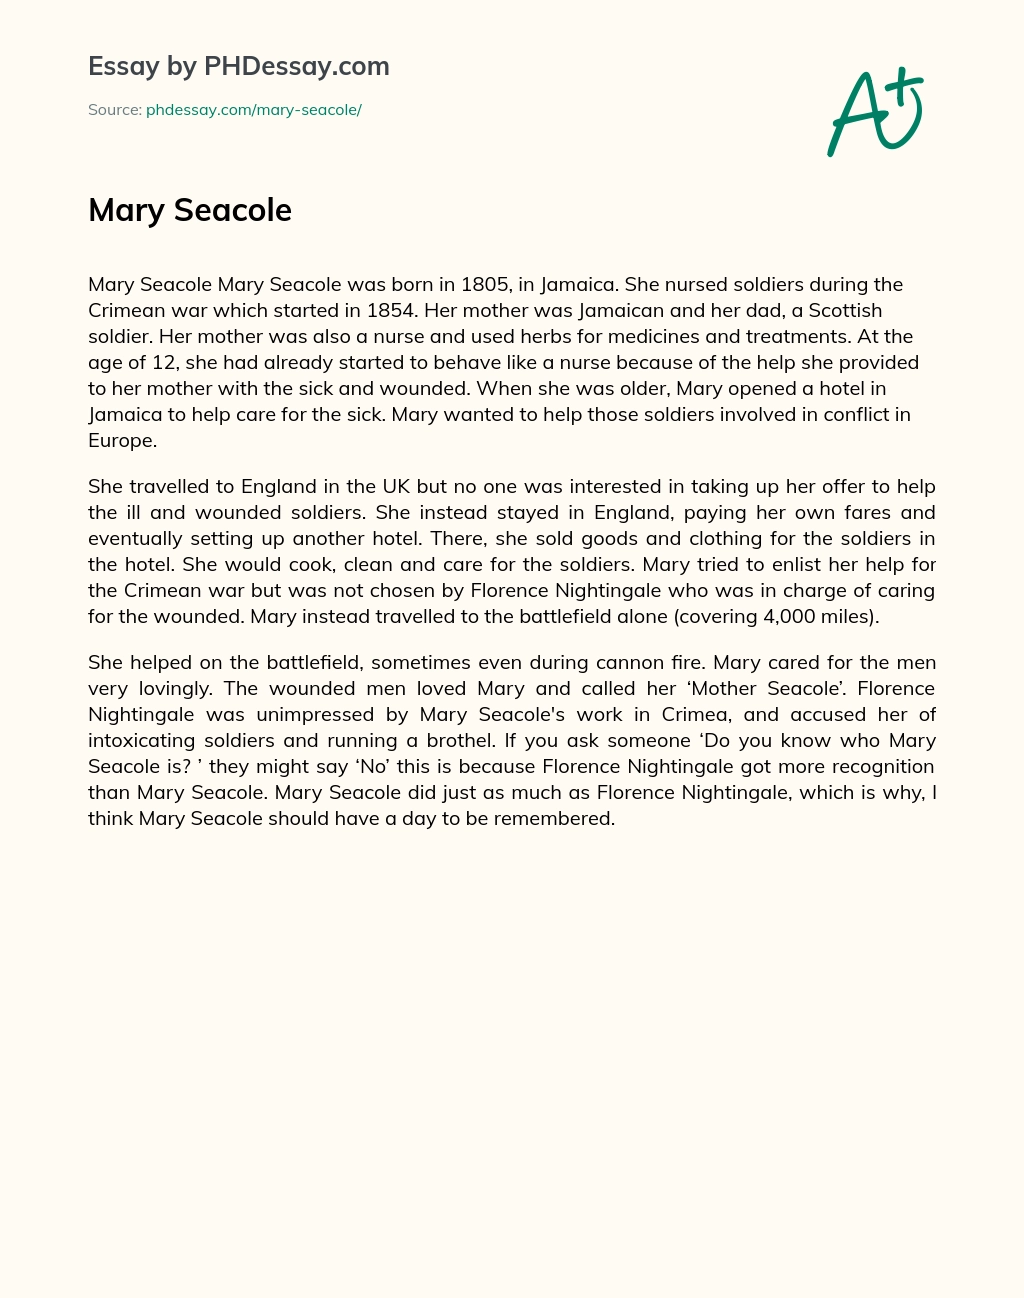 Mary Seacole essay